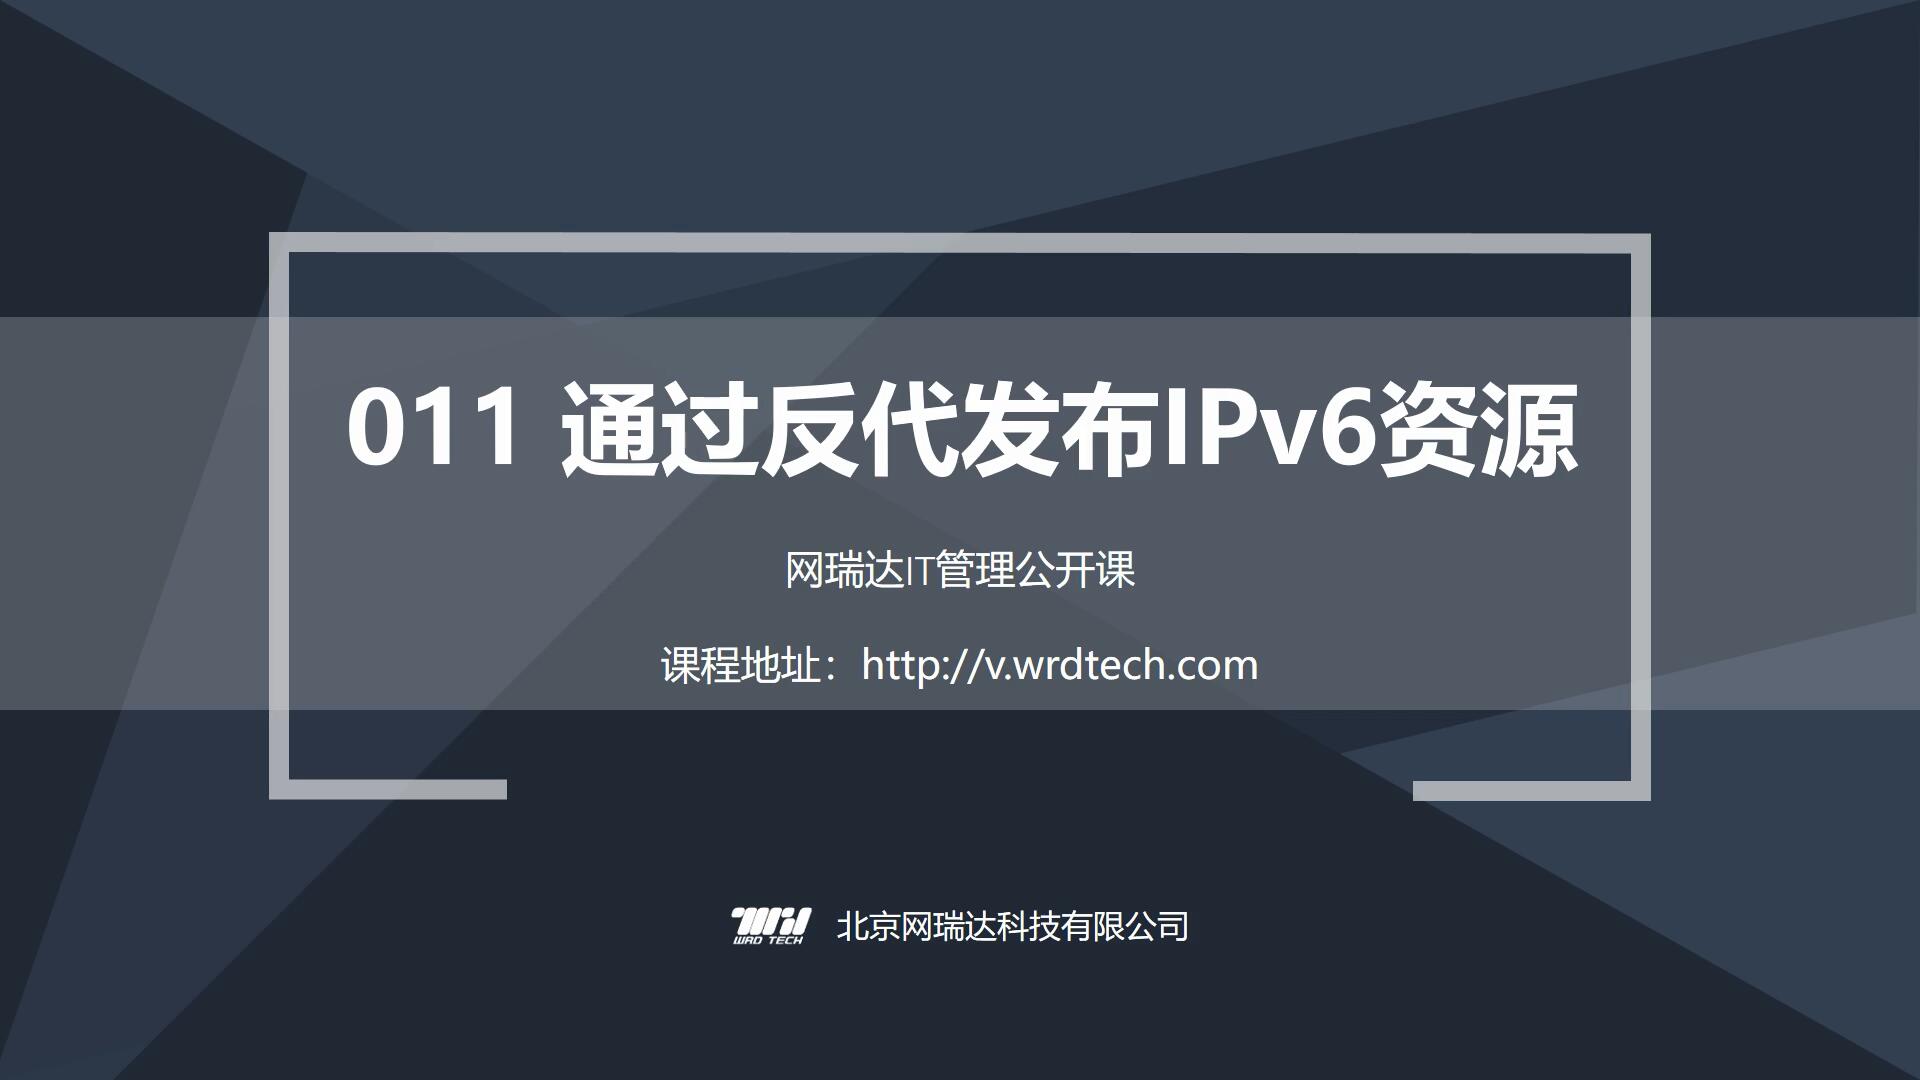 011-业务-通过反代发布IPv6资源